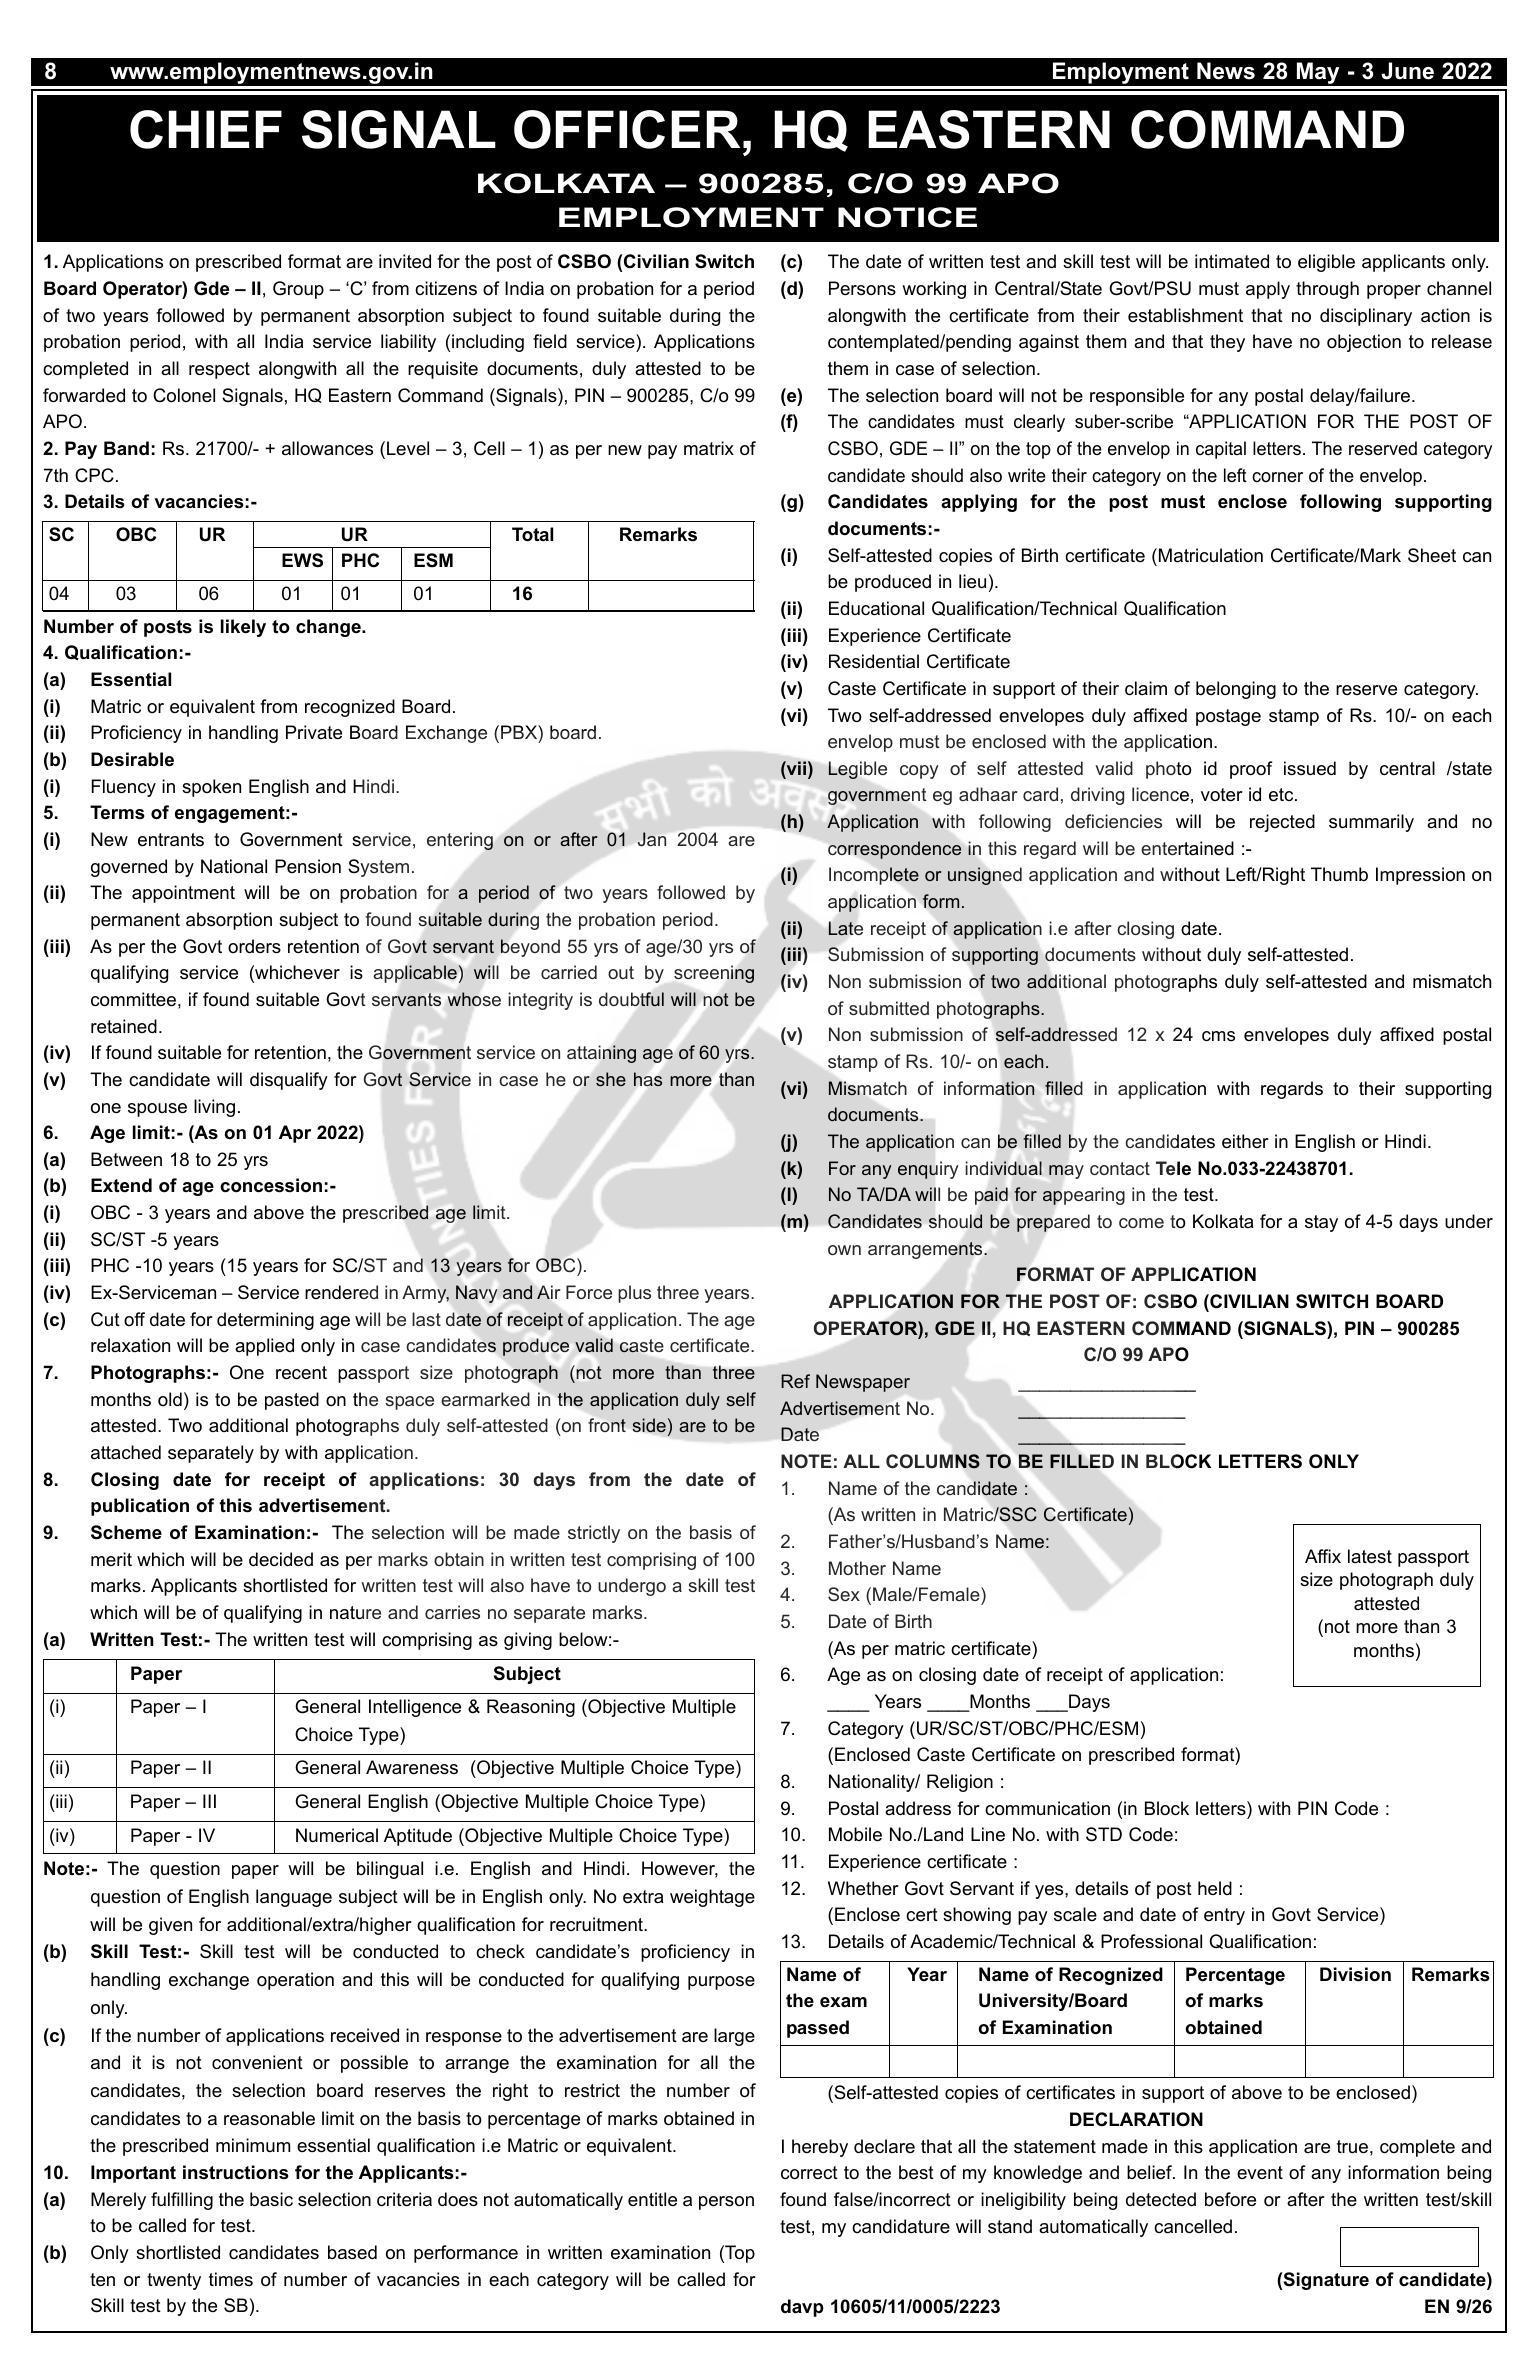 HQ Eastern Command (Signals) Civilian Switch Board Operator (CSBO) Recruitment 2022 - Page 1